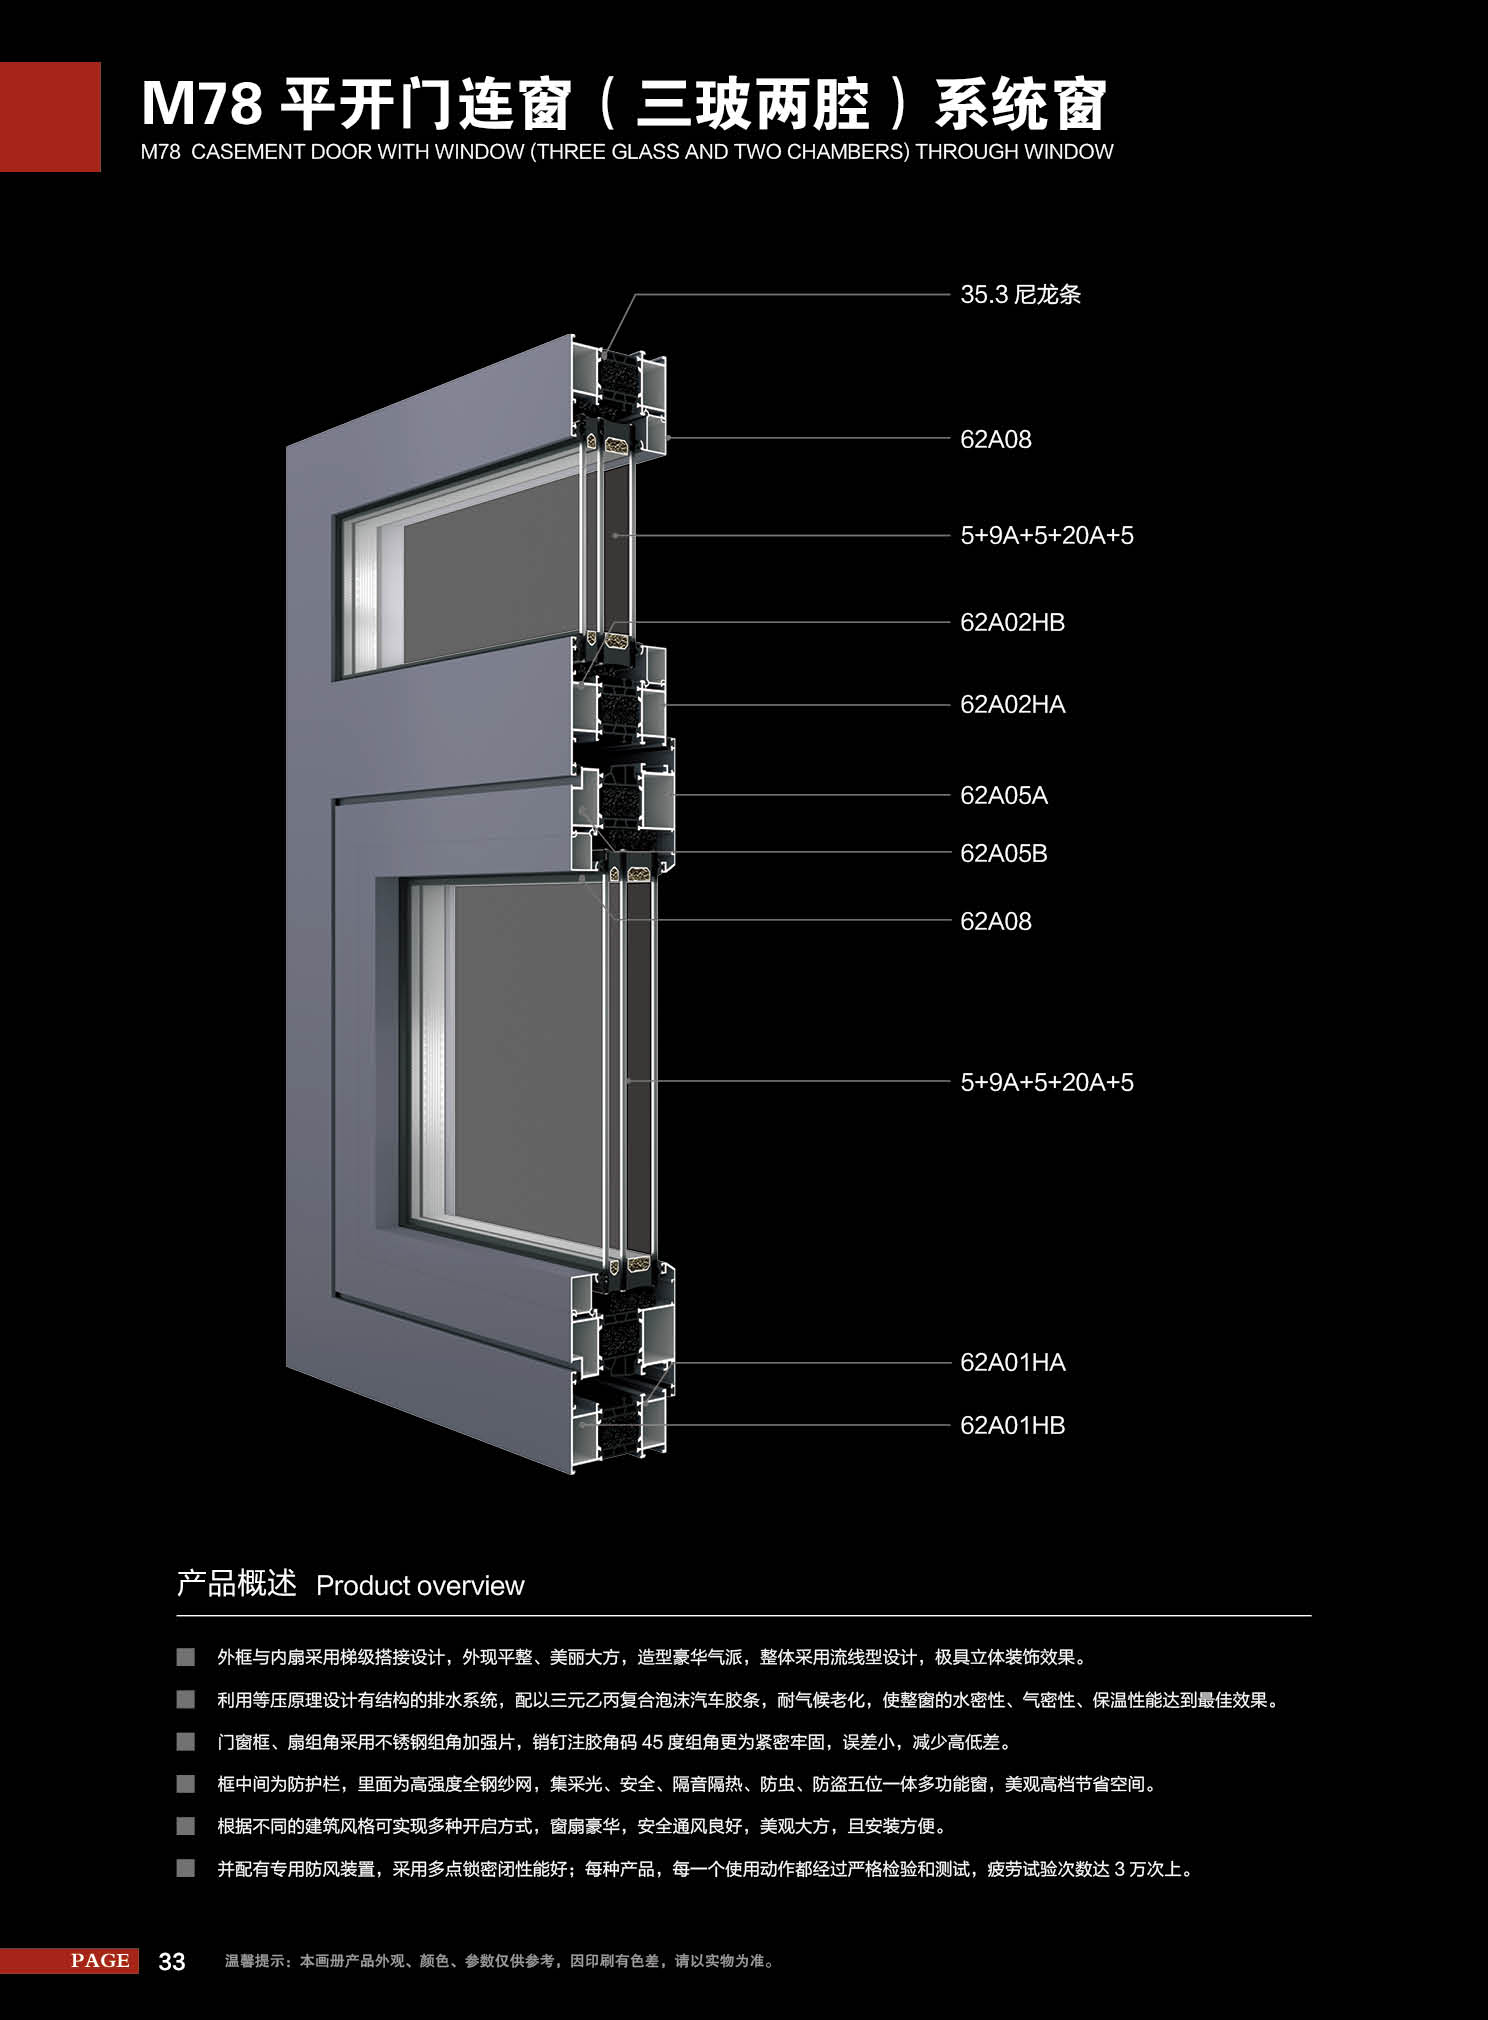 M78片平开门连窗（三玻两腔）系统窗.jpg